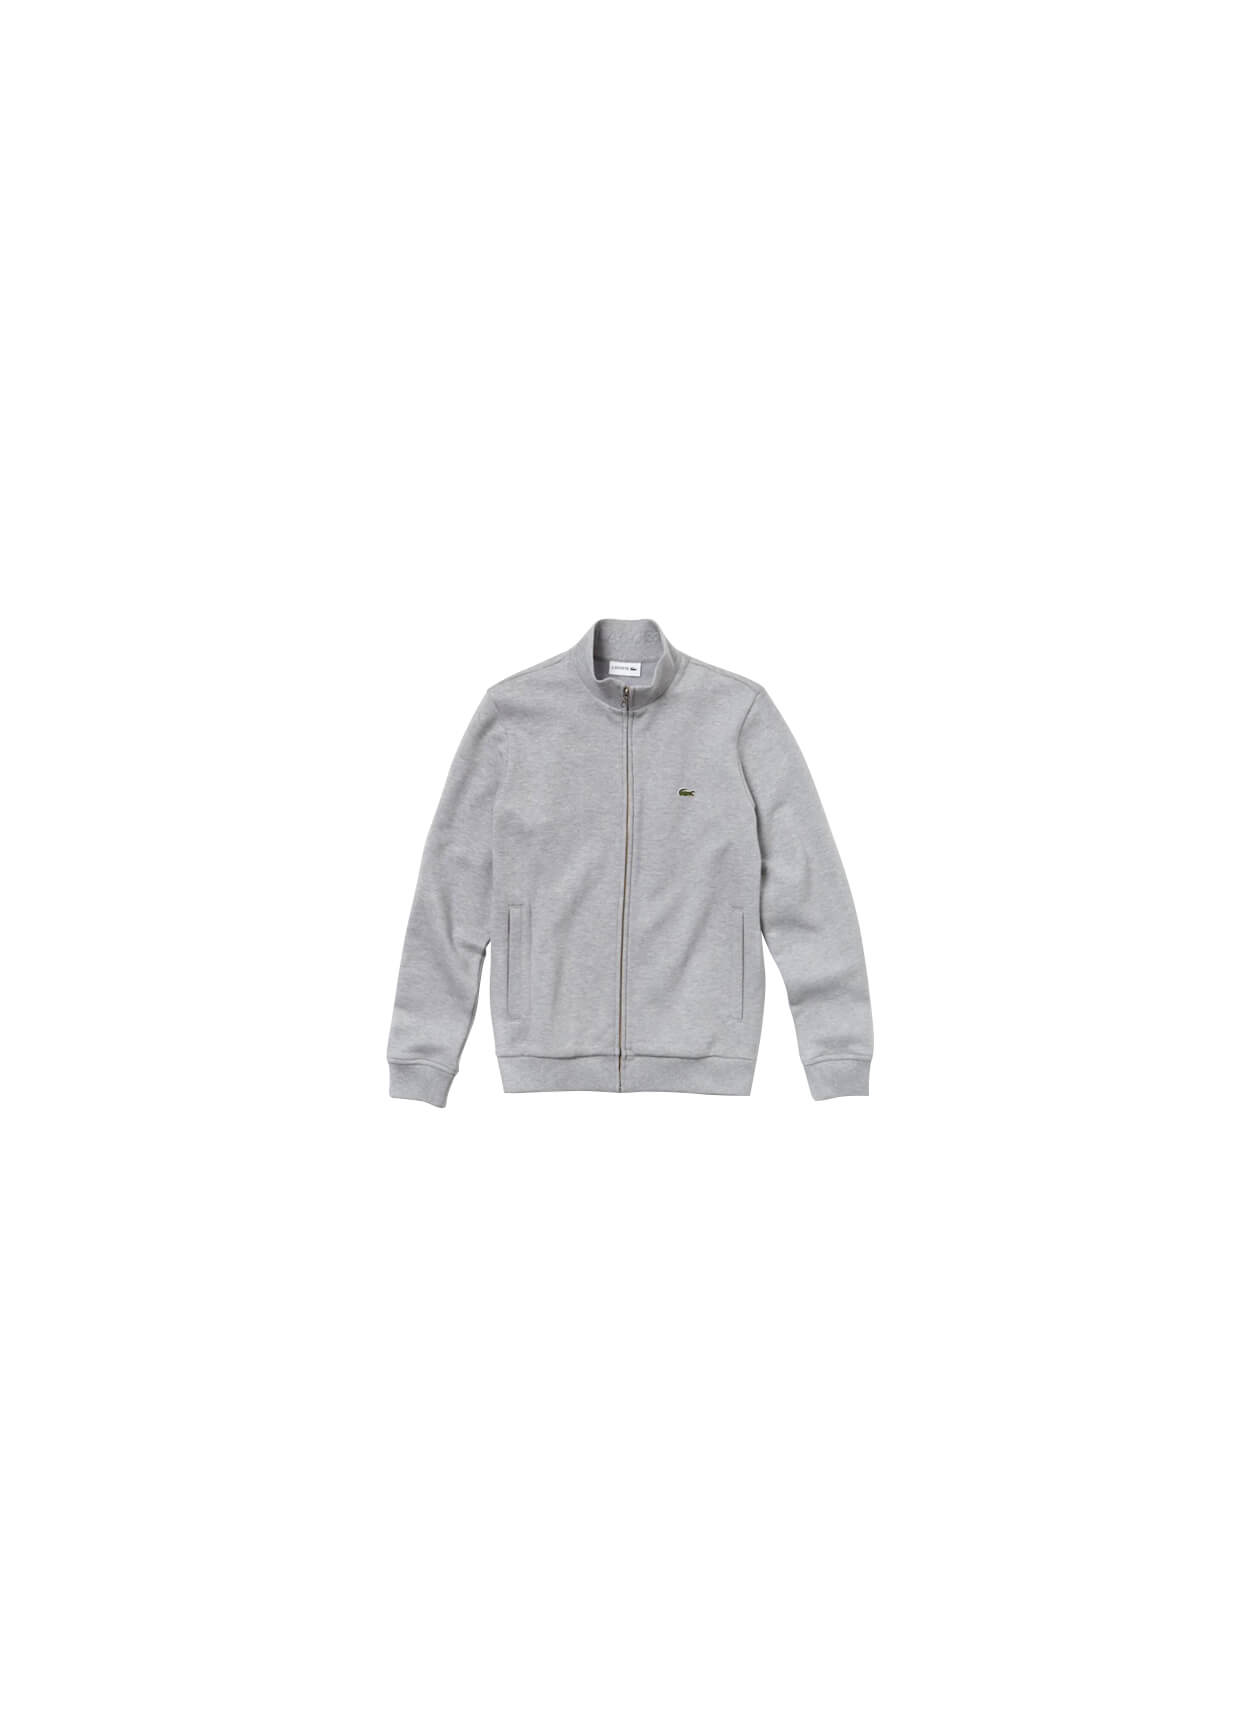 Lacoste SH4317 - Men's Full-Zip Fleece Sweatshirt